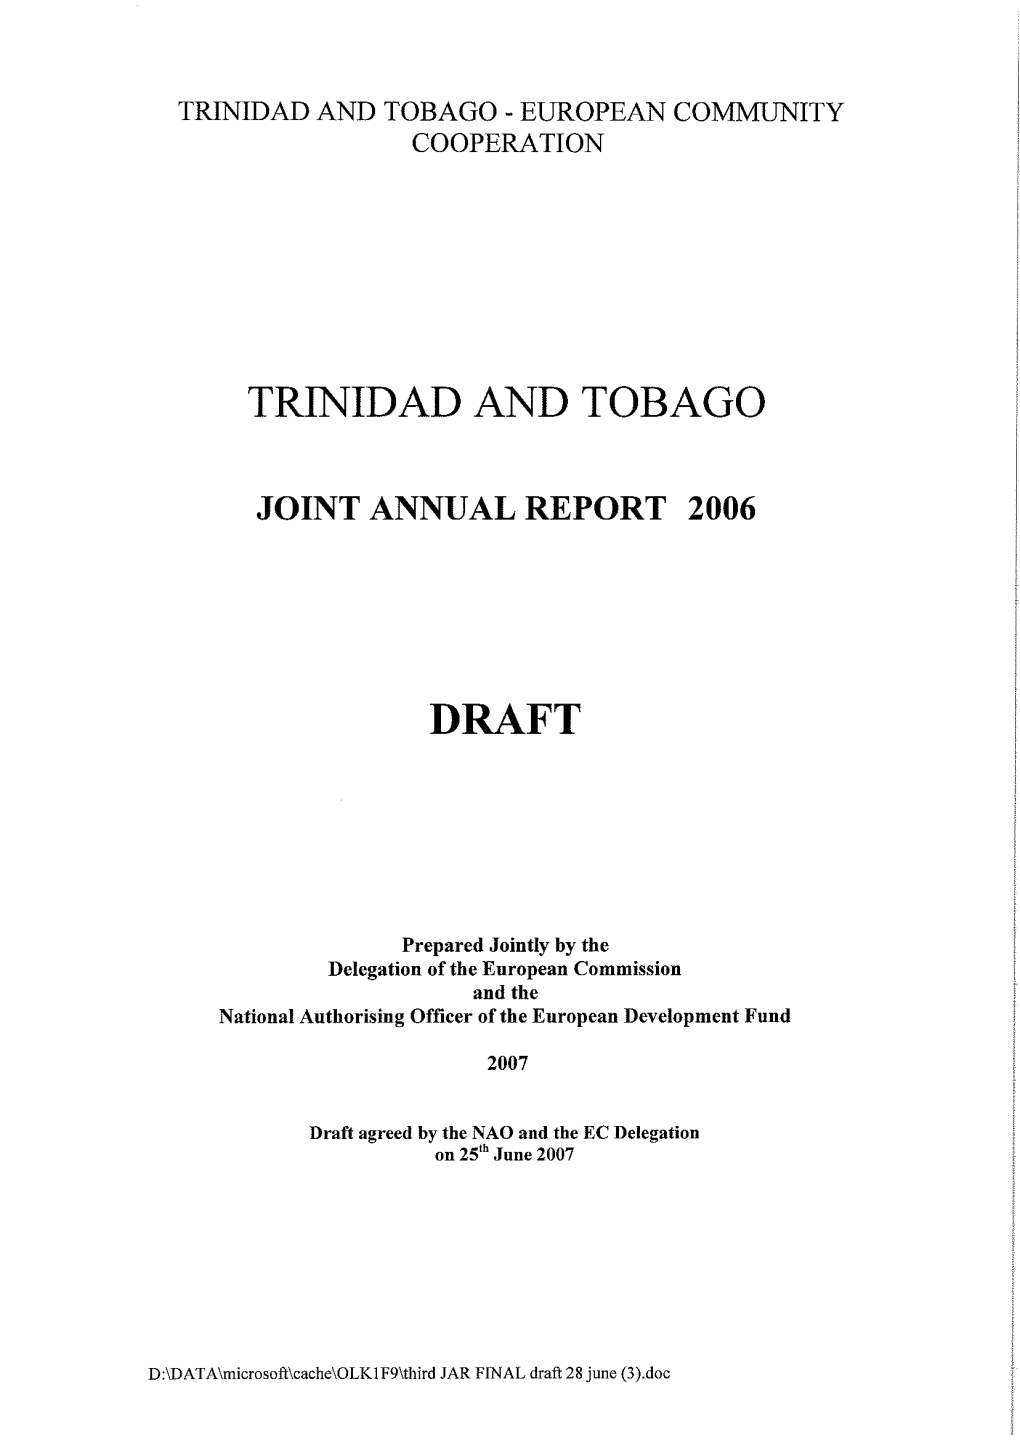 Trinidad and Tobago Draft